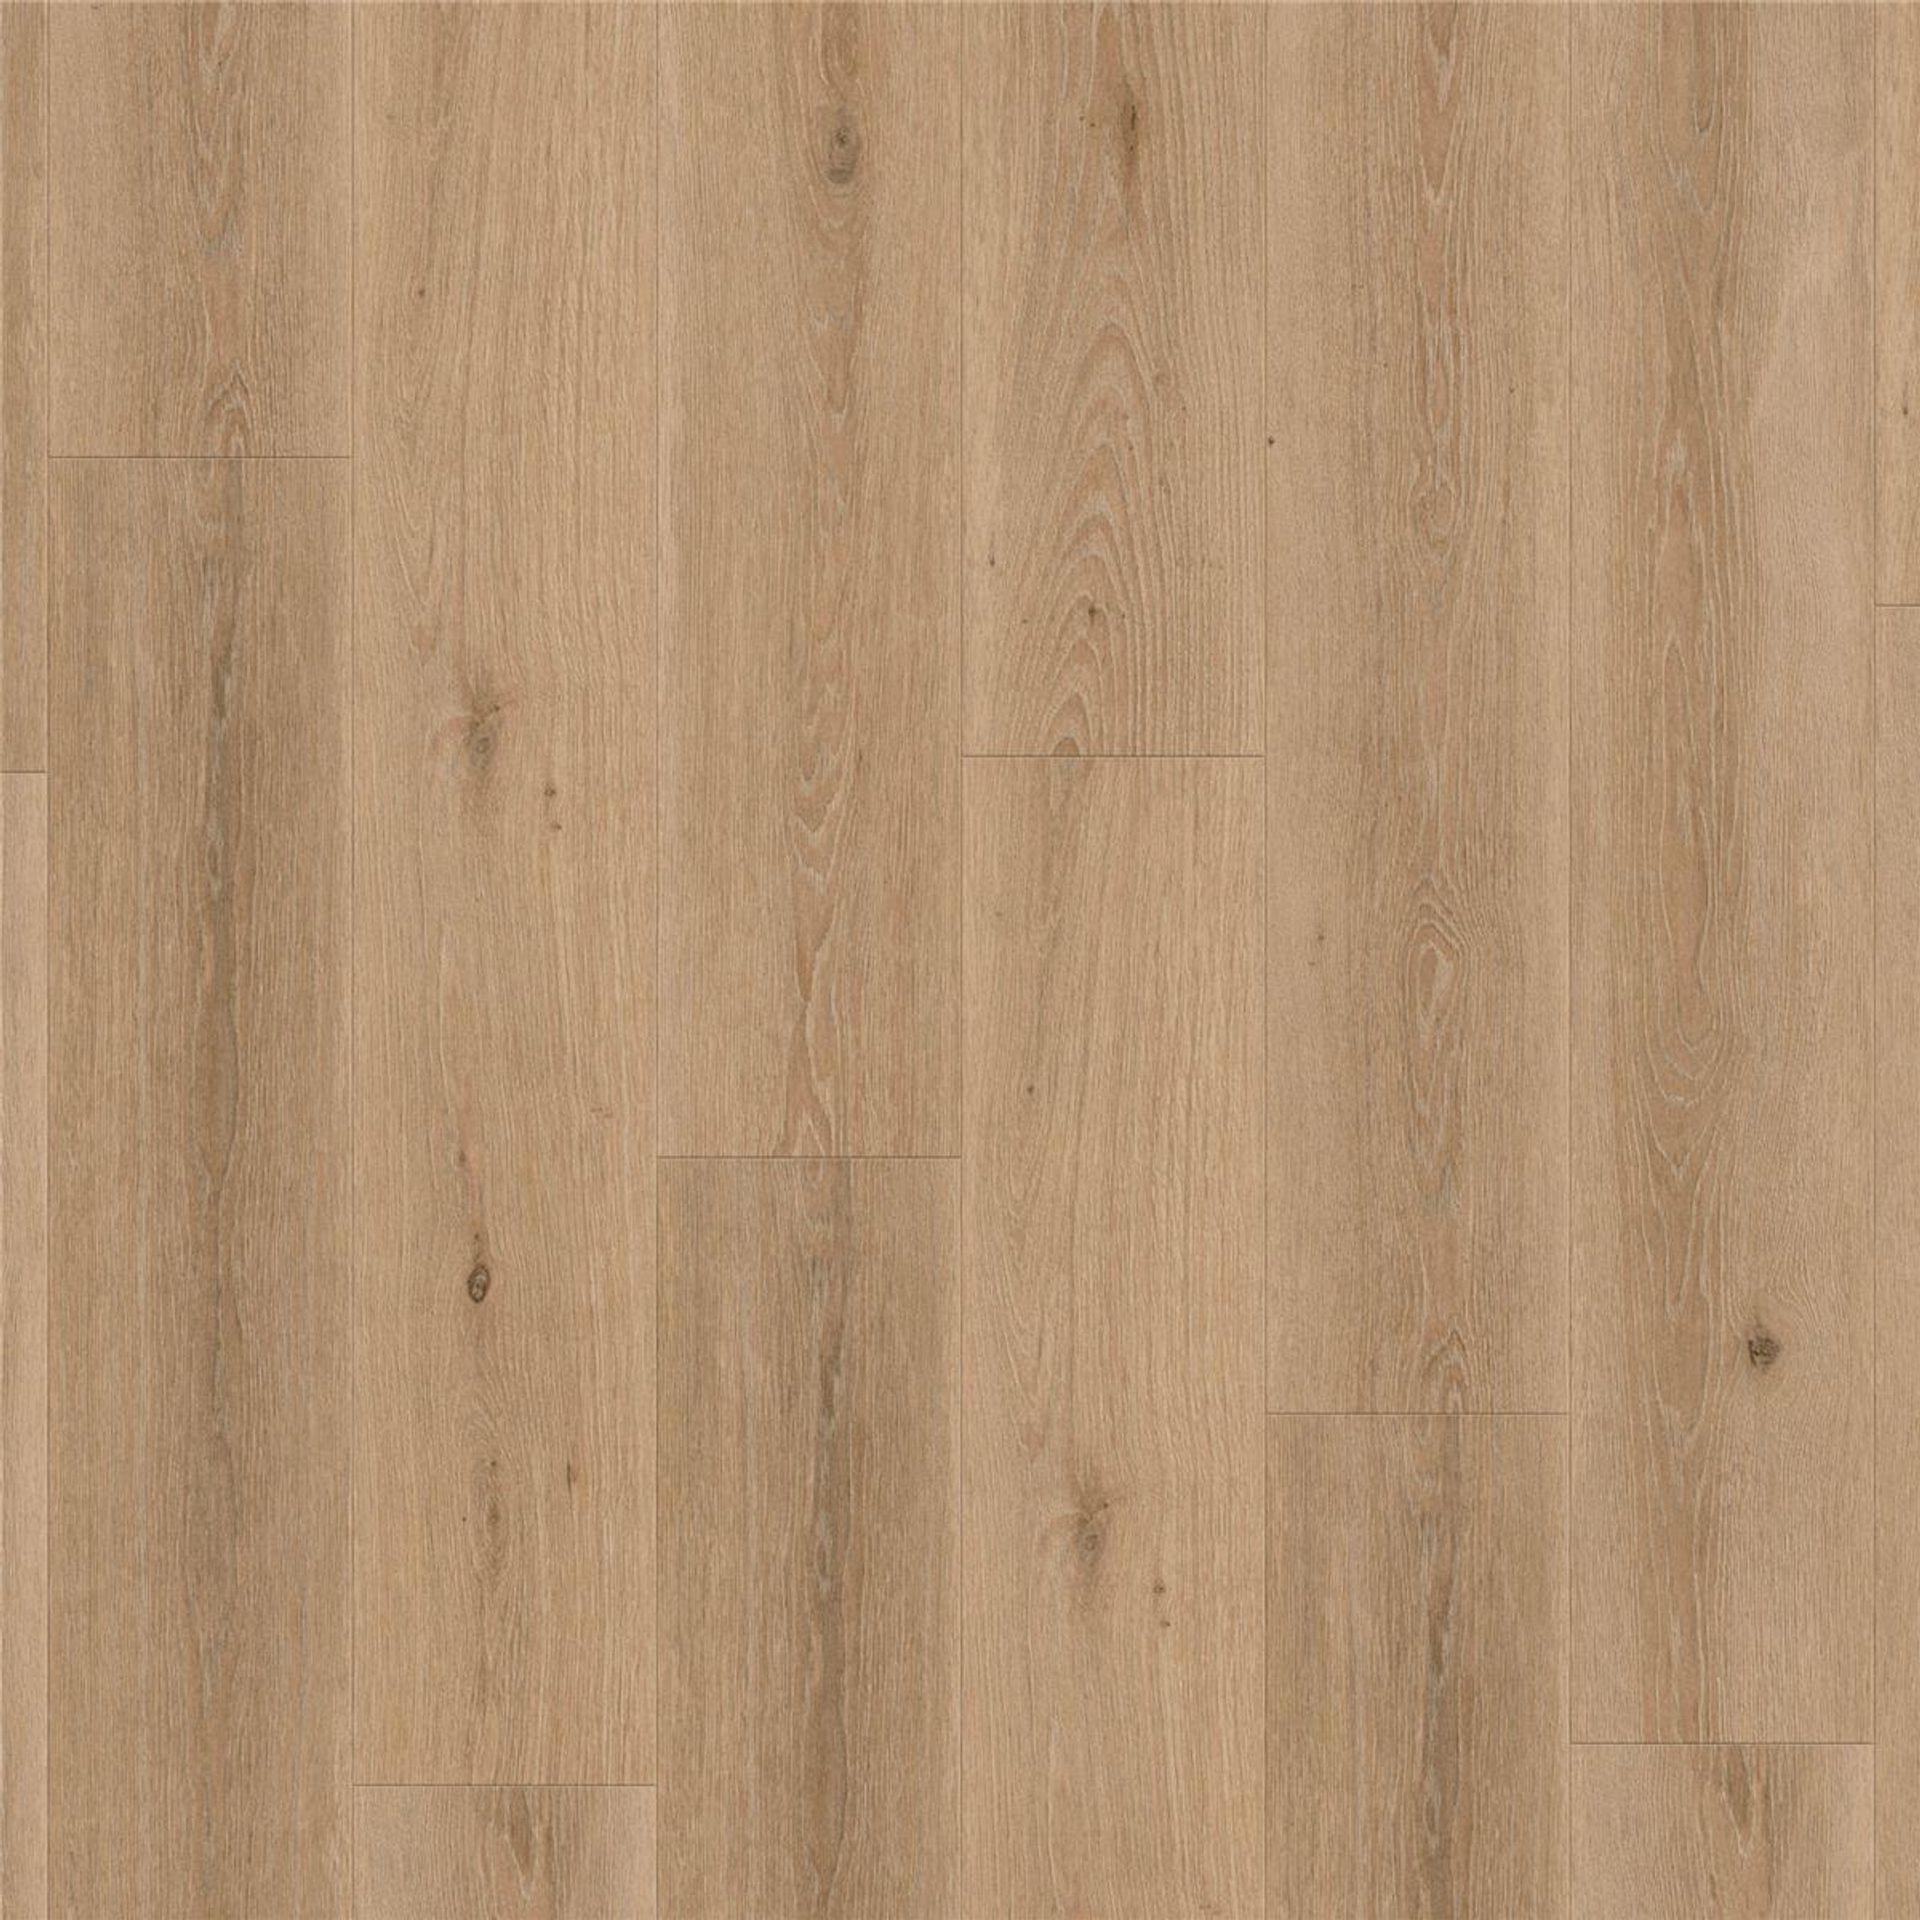 Designboden AUTHENTICS-Highland Oak-Arabica Planke 121,1 cm x 19,05 cm - Nutzschichtdicke 0,30 mm